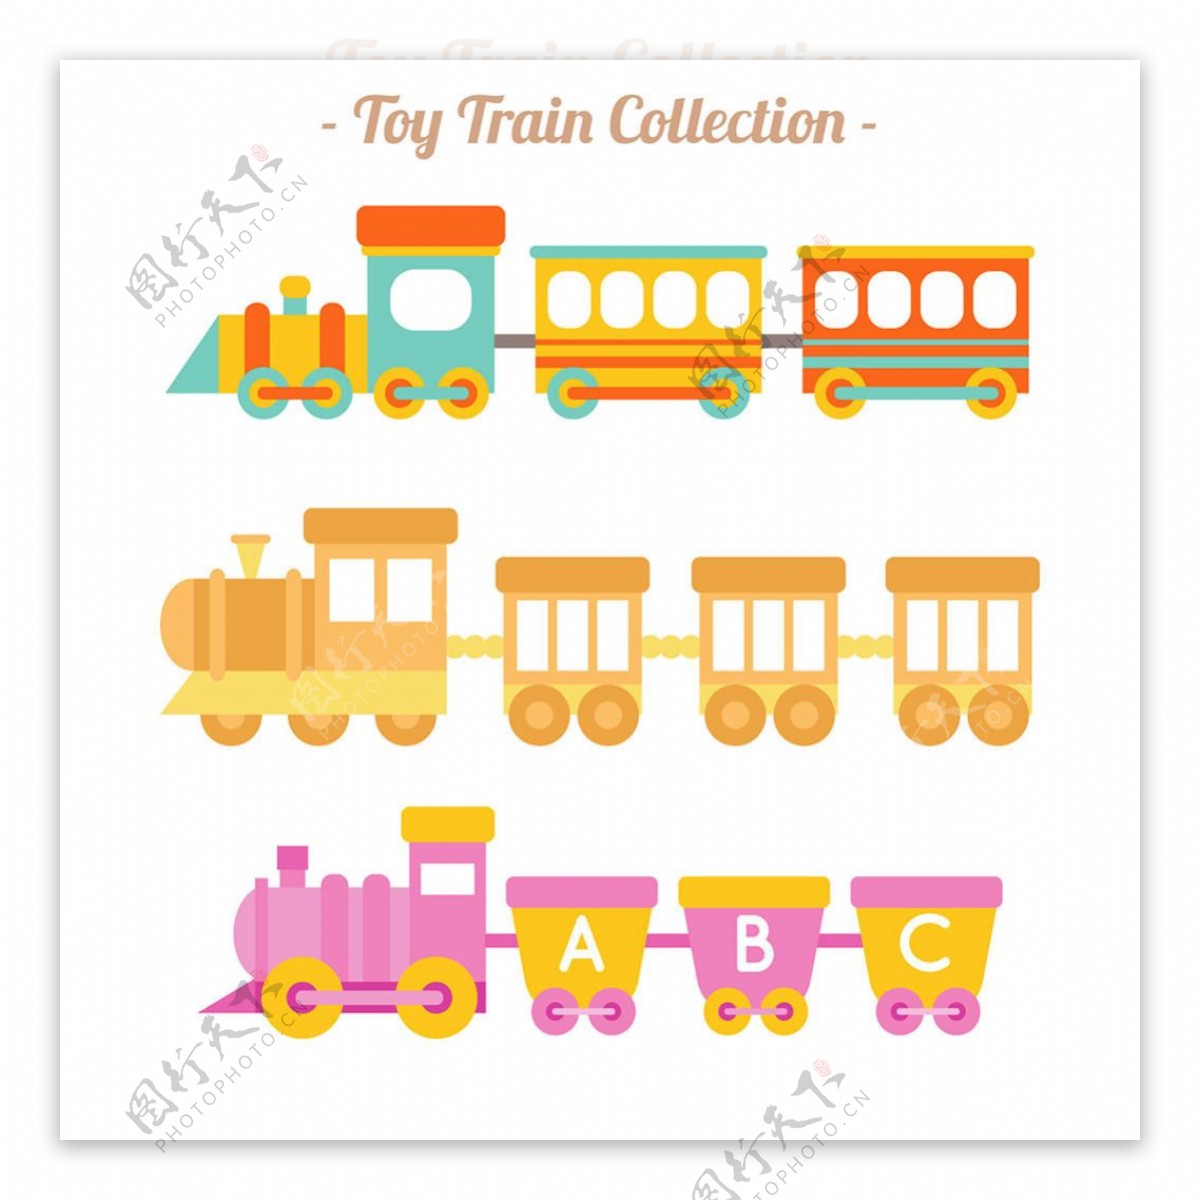 可爱的玩具火车矢量素材